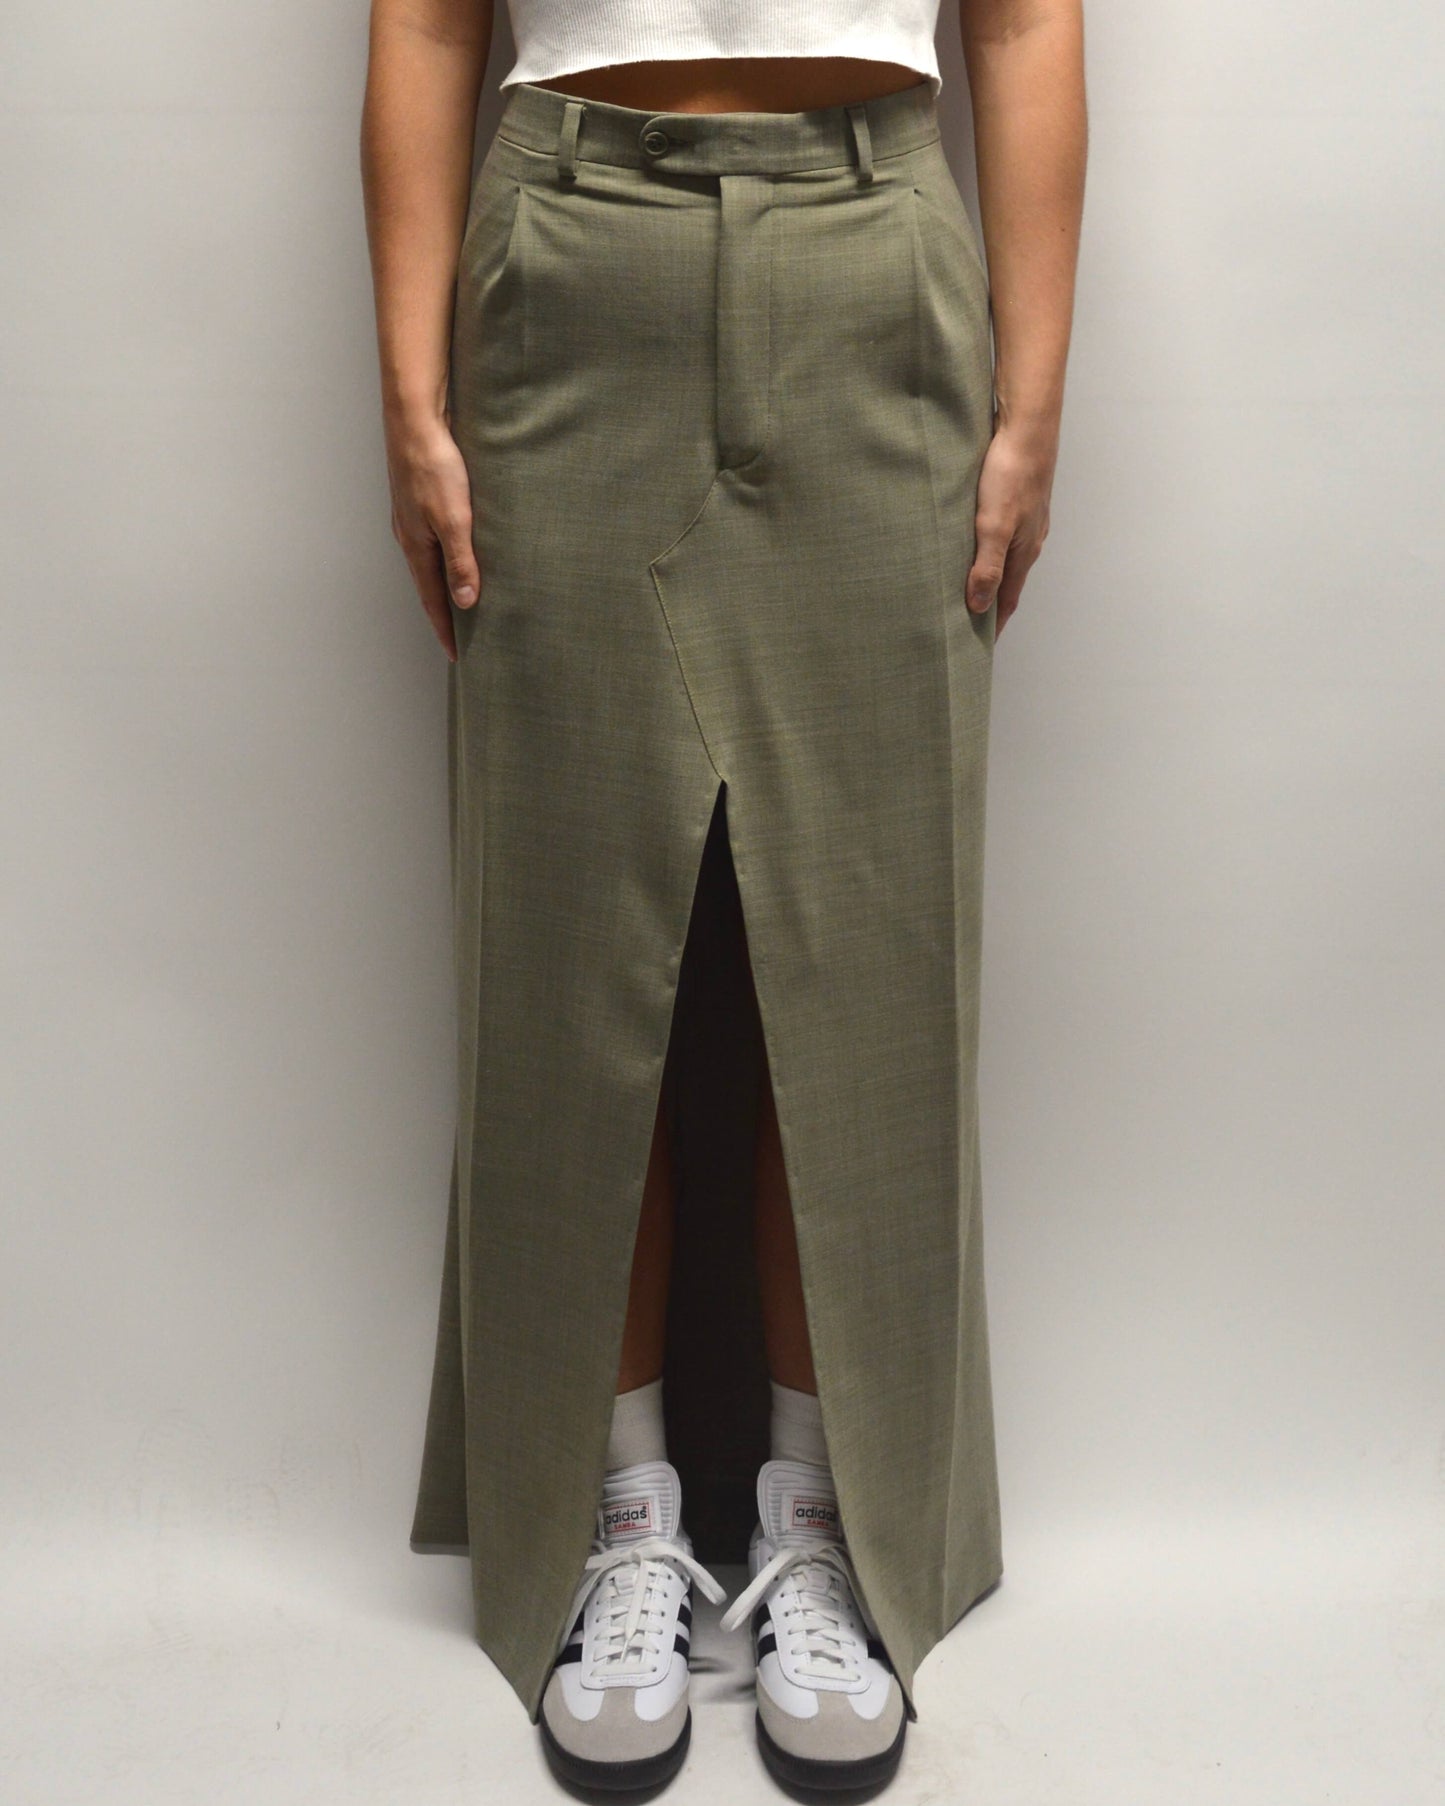 Long Skirt - Light Olive (XS/S)